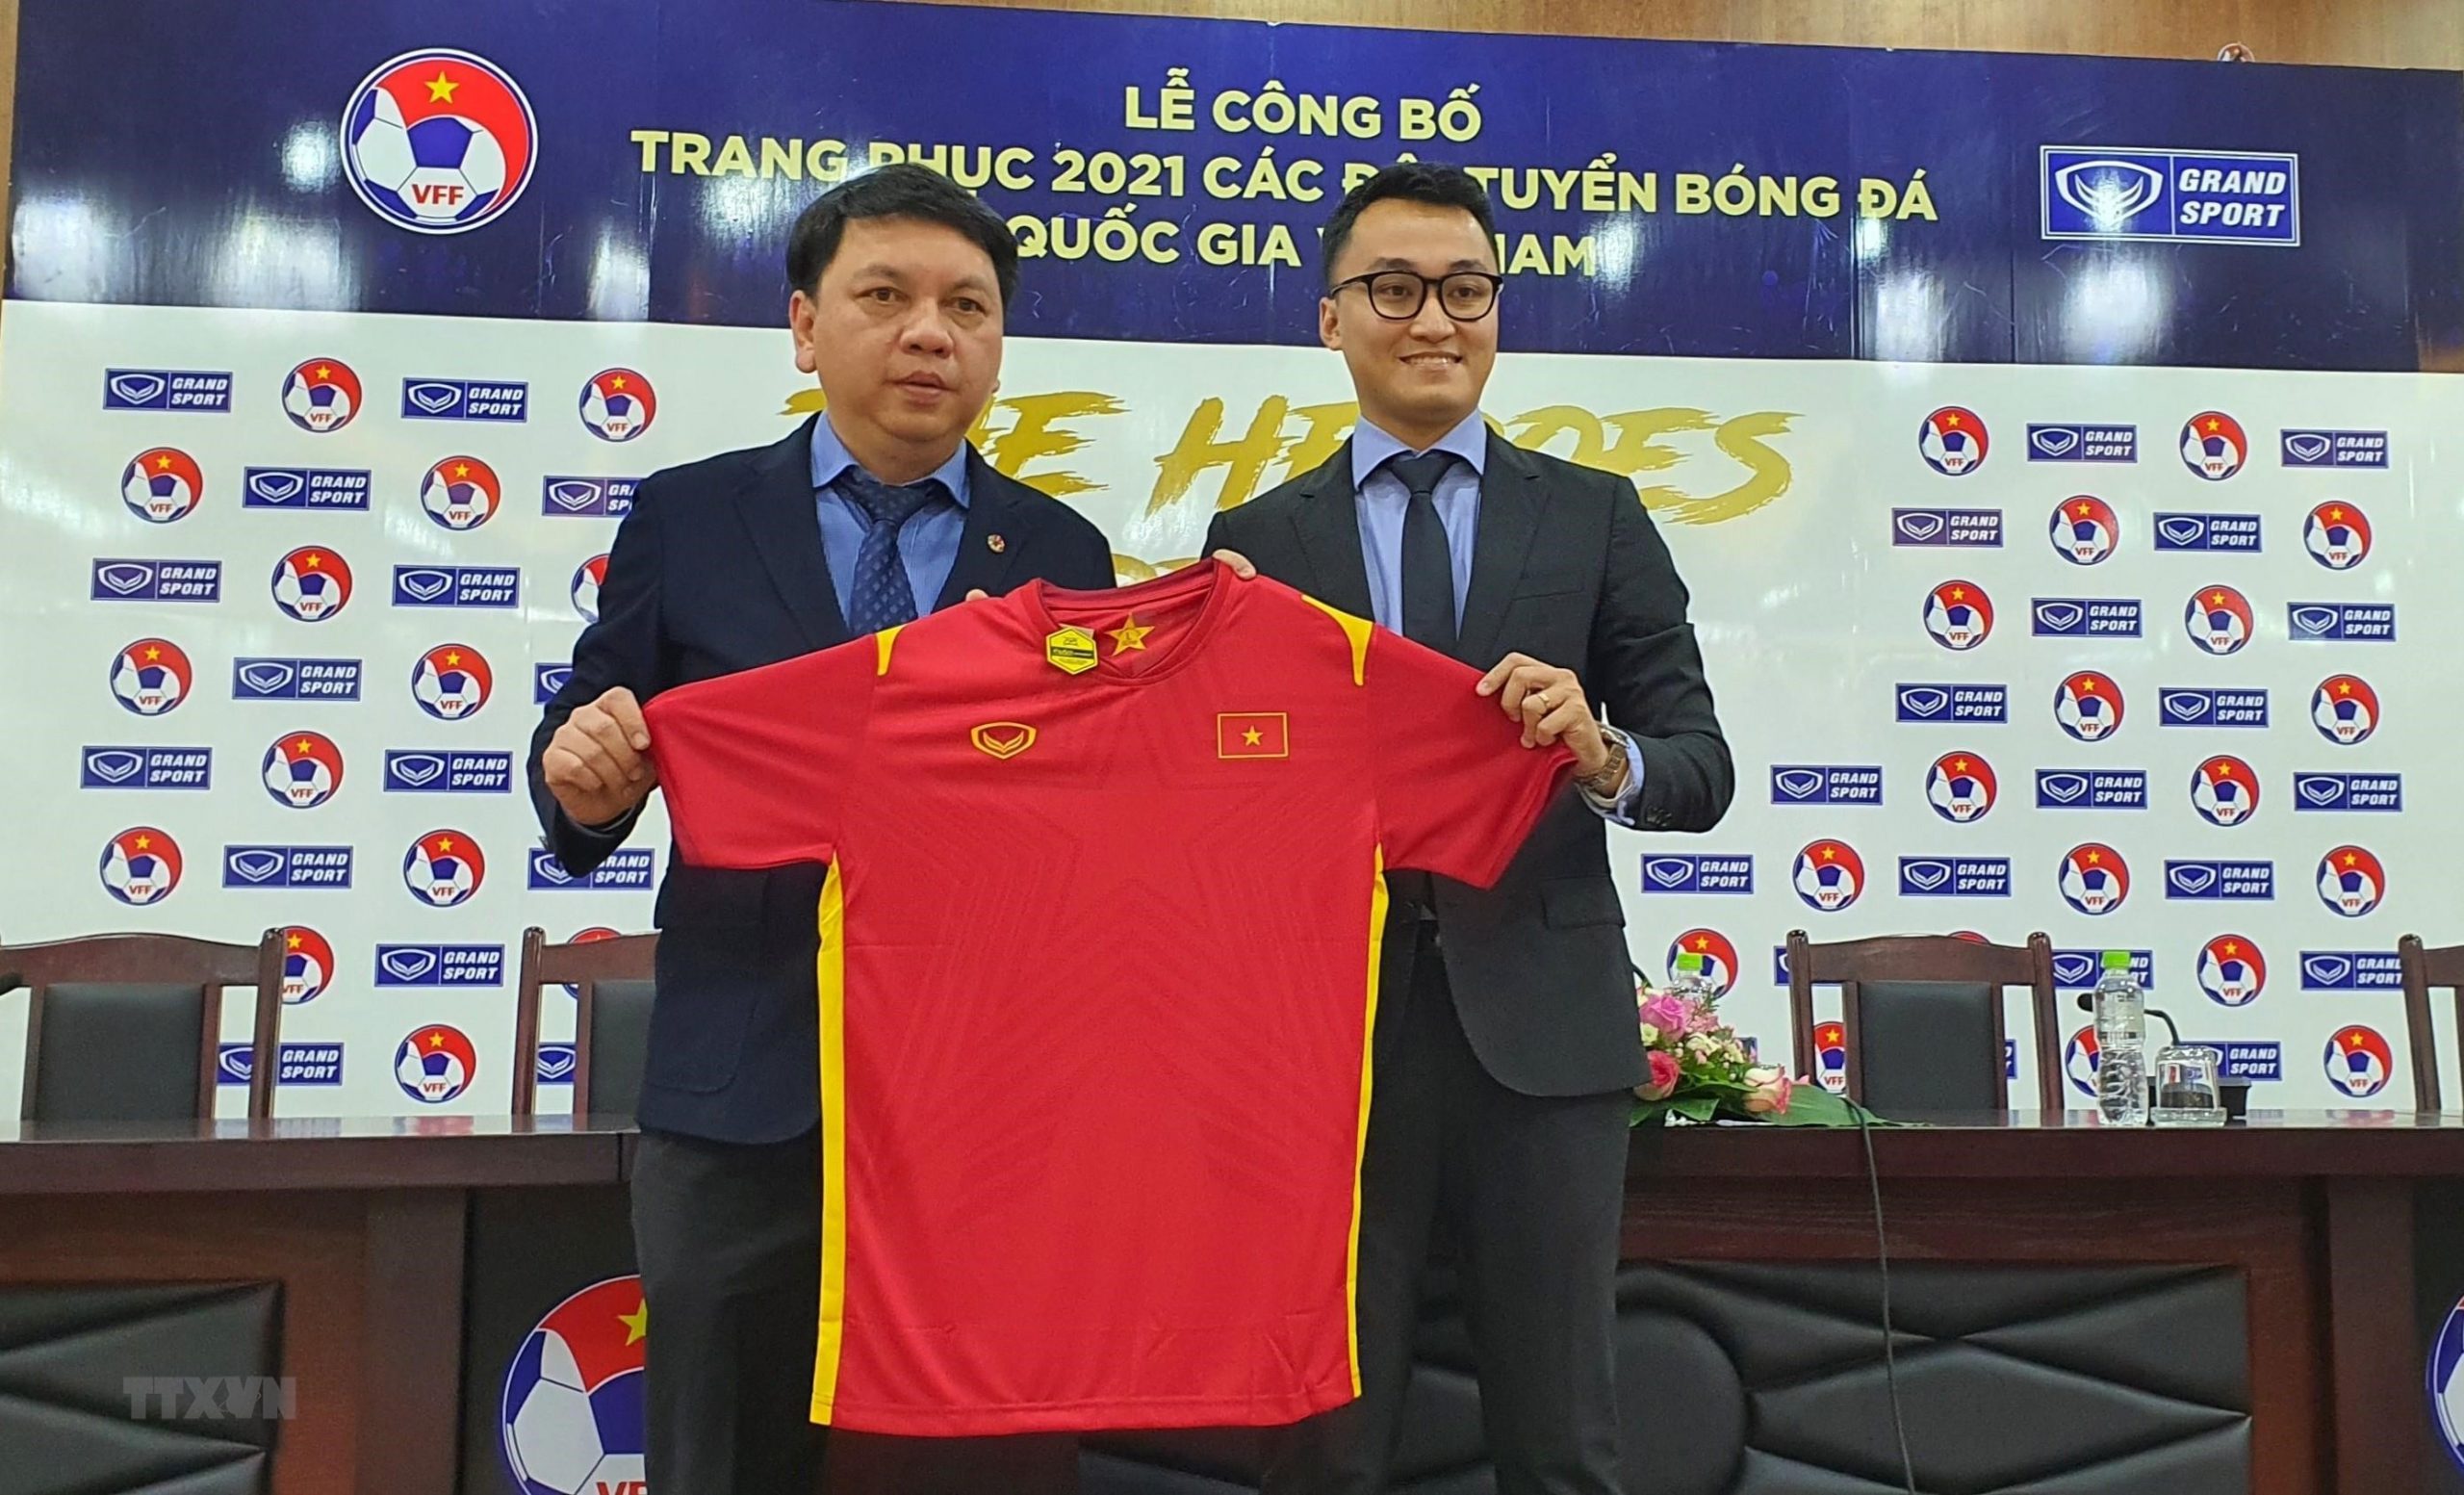 Grand Sport cũng là nhà tài trợ trang phục chính thức của đội tuyển Việt Nam